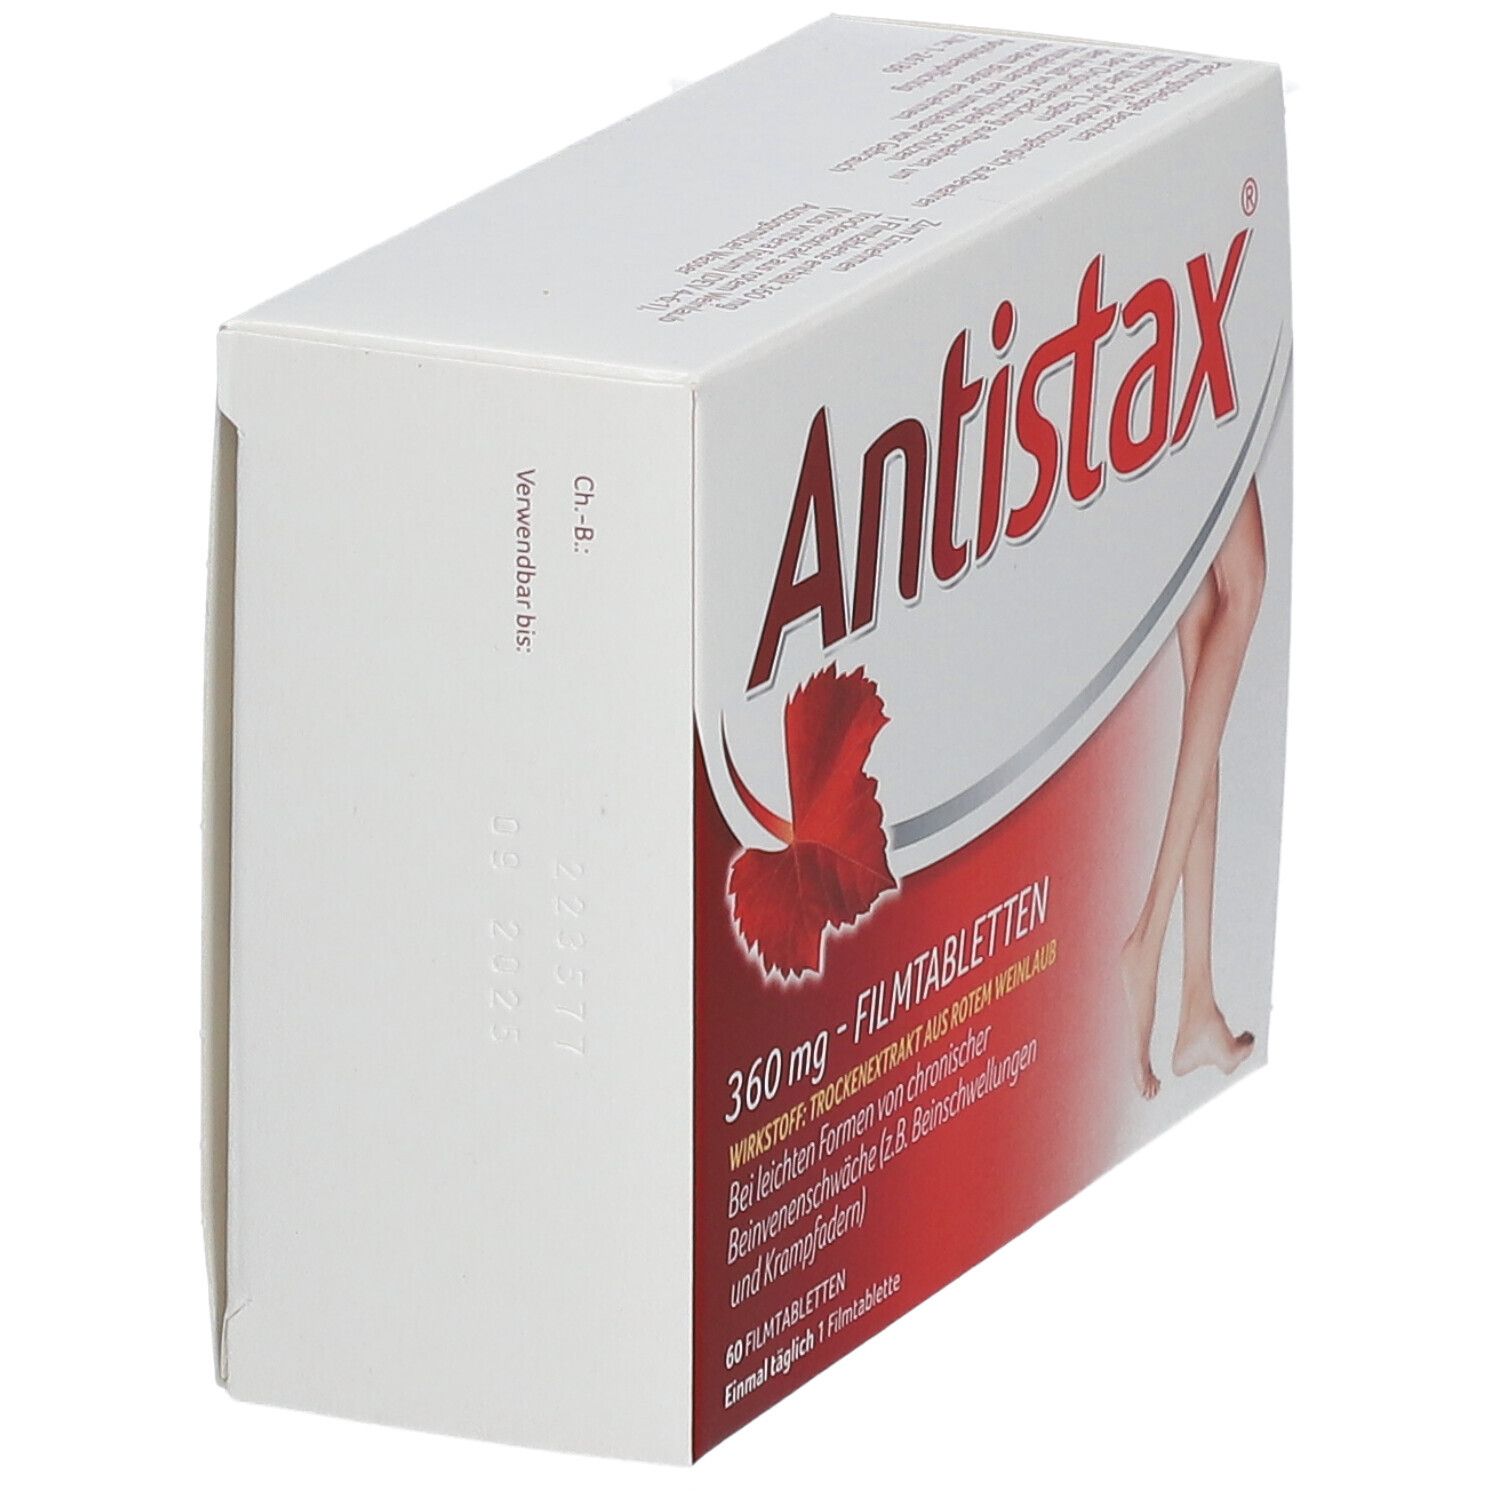 Antistax® 360 mg Filmtabletten bei Venenschwäche und Krampfadern